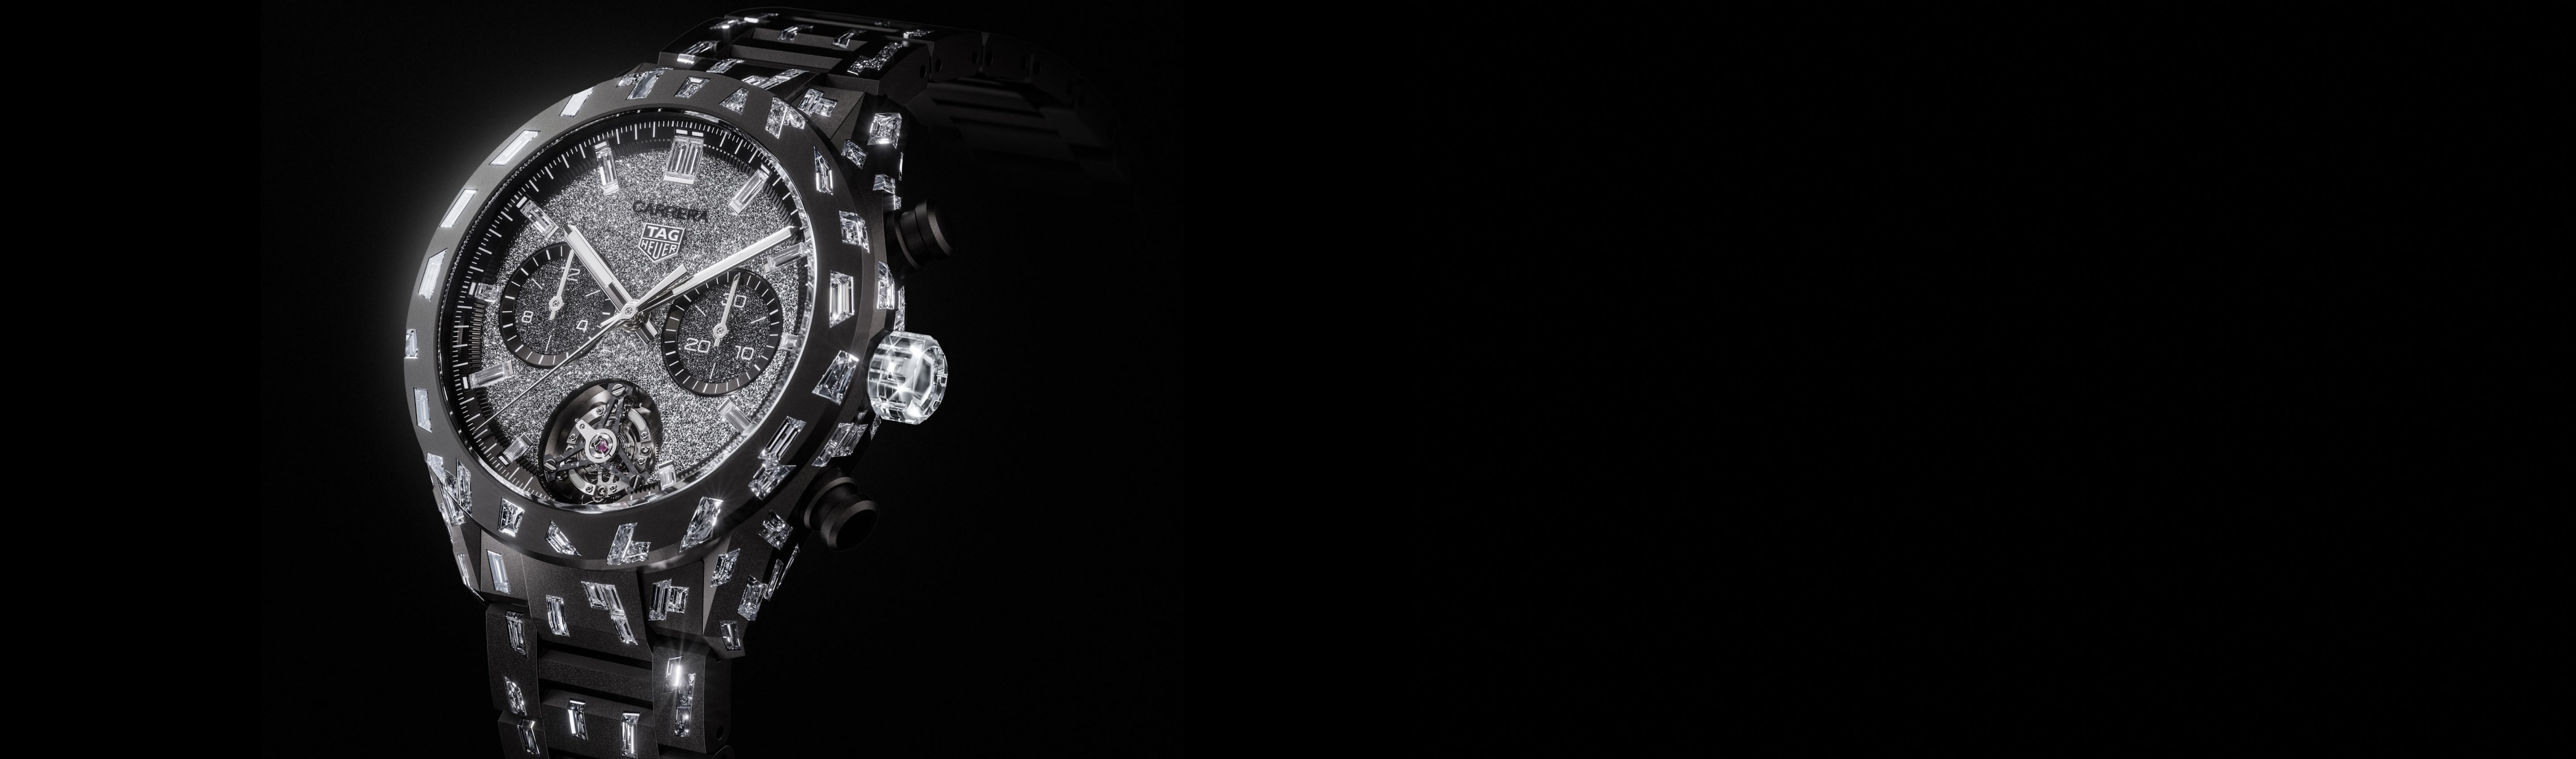 泰格豪雅 - 卡莱拉系列Plasma腕表